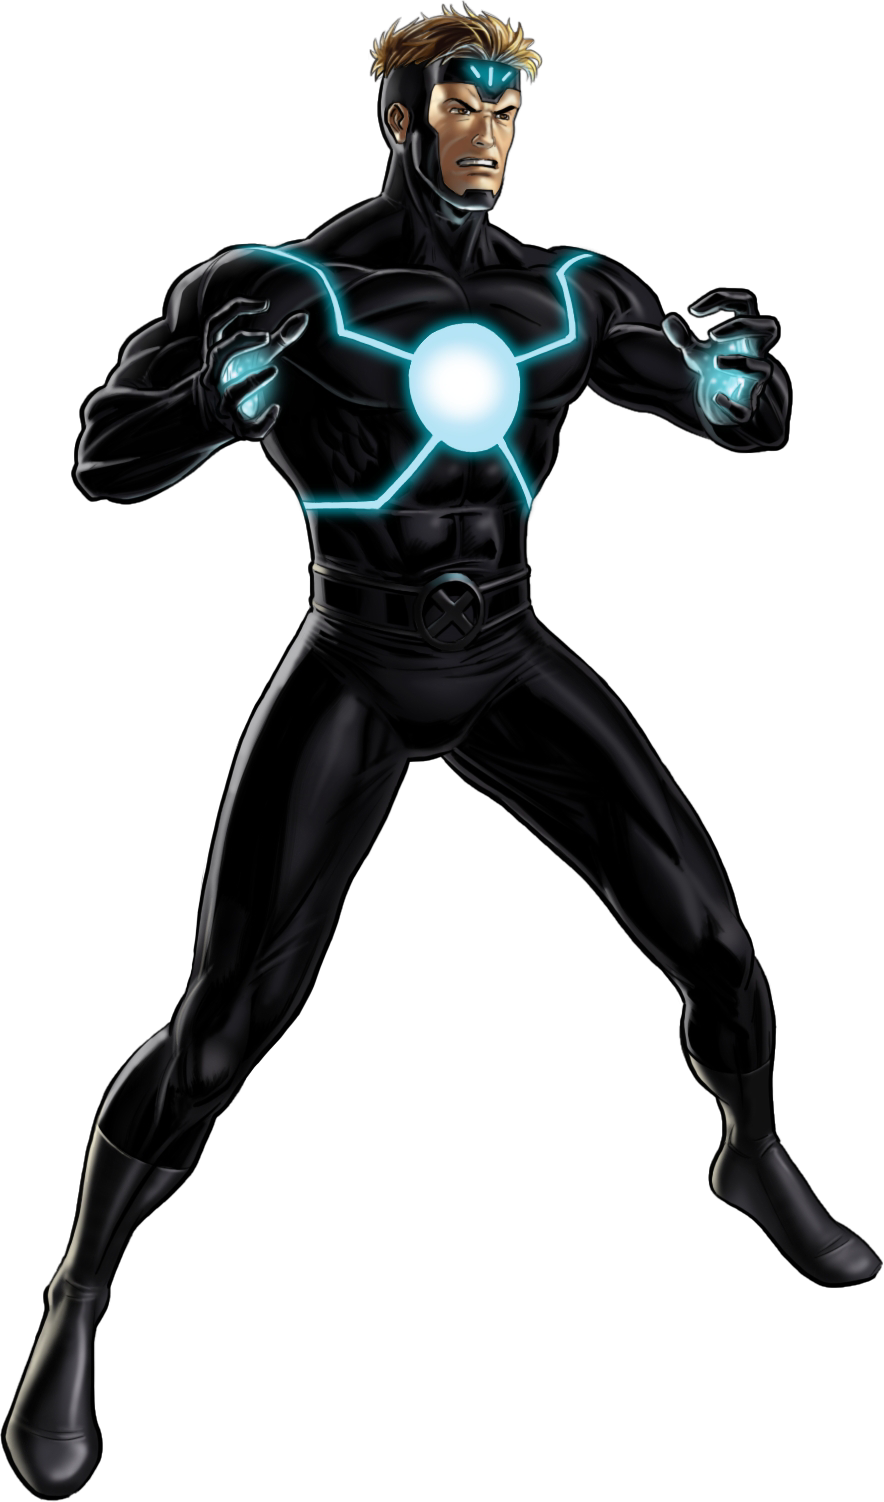 Havok - Marvel Avengers Alliance New Heroes (884x1502)